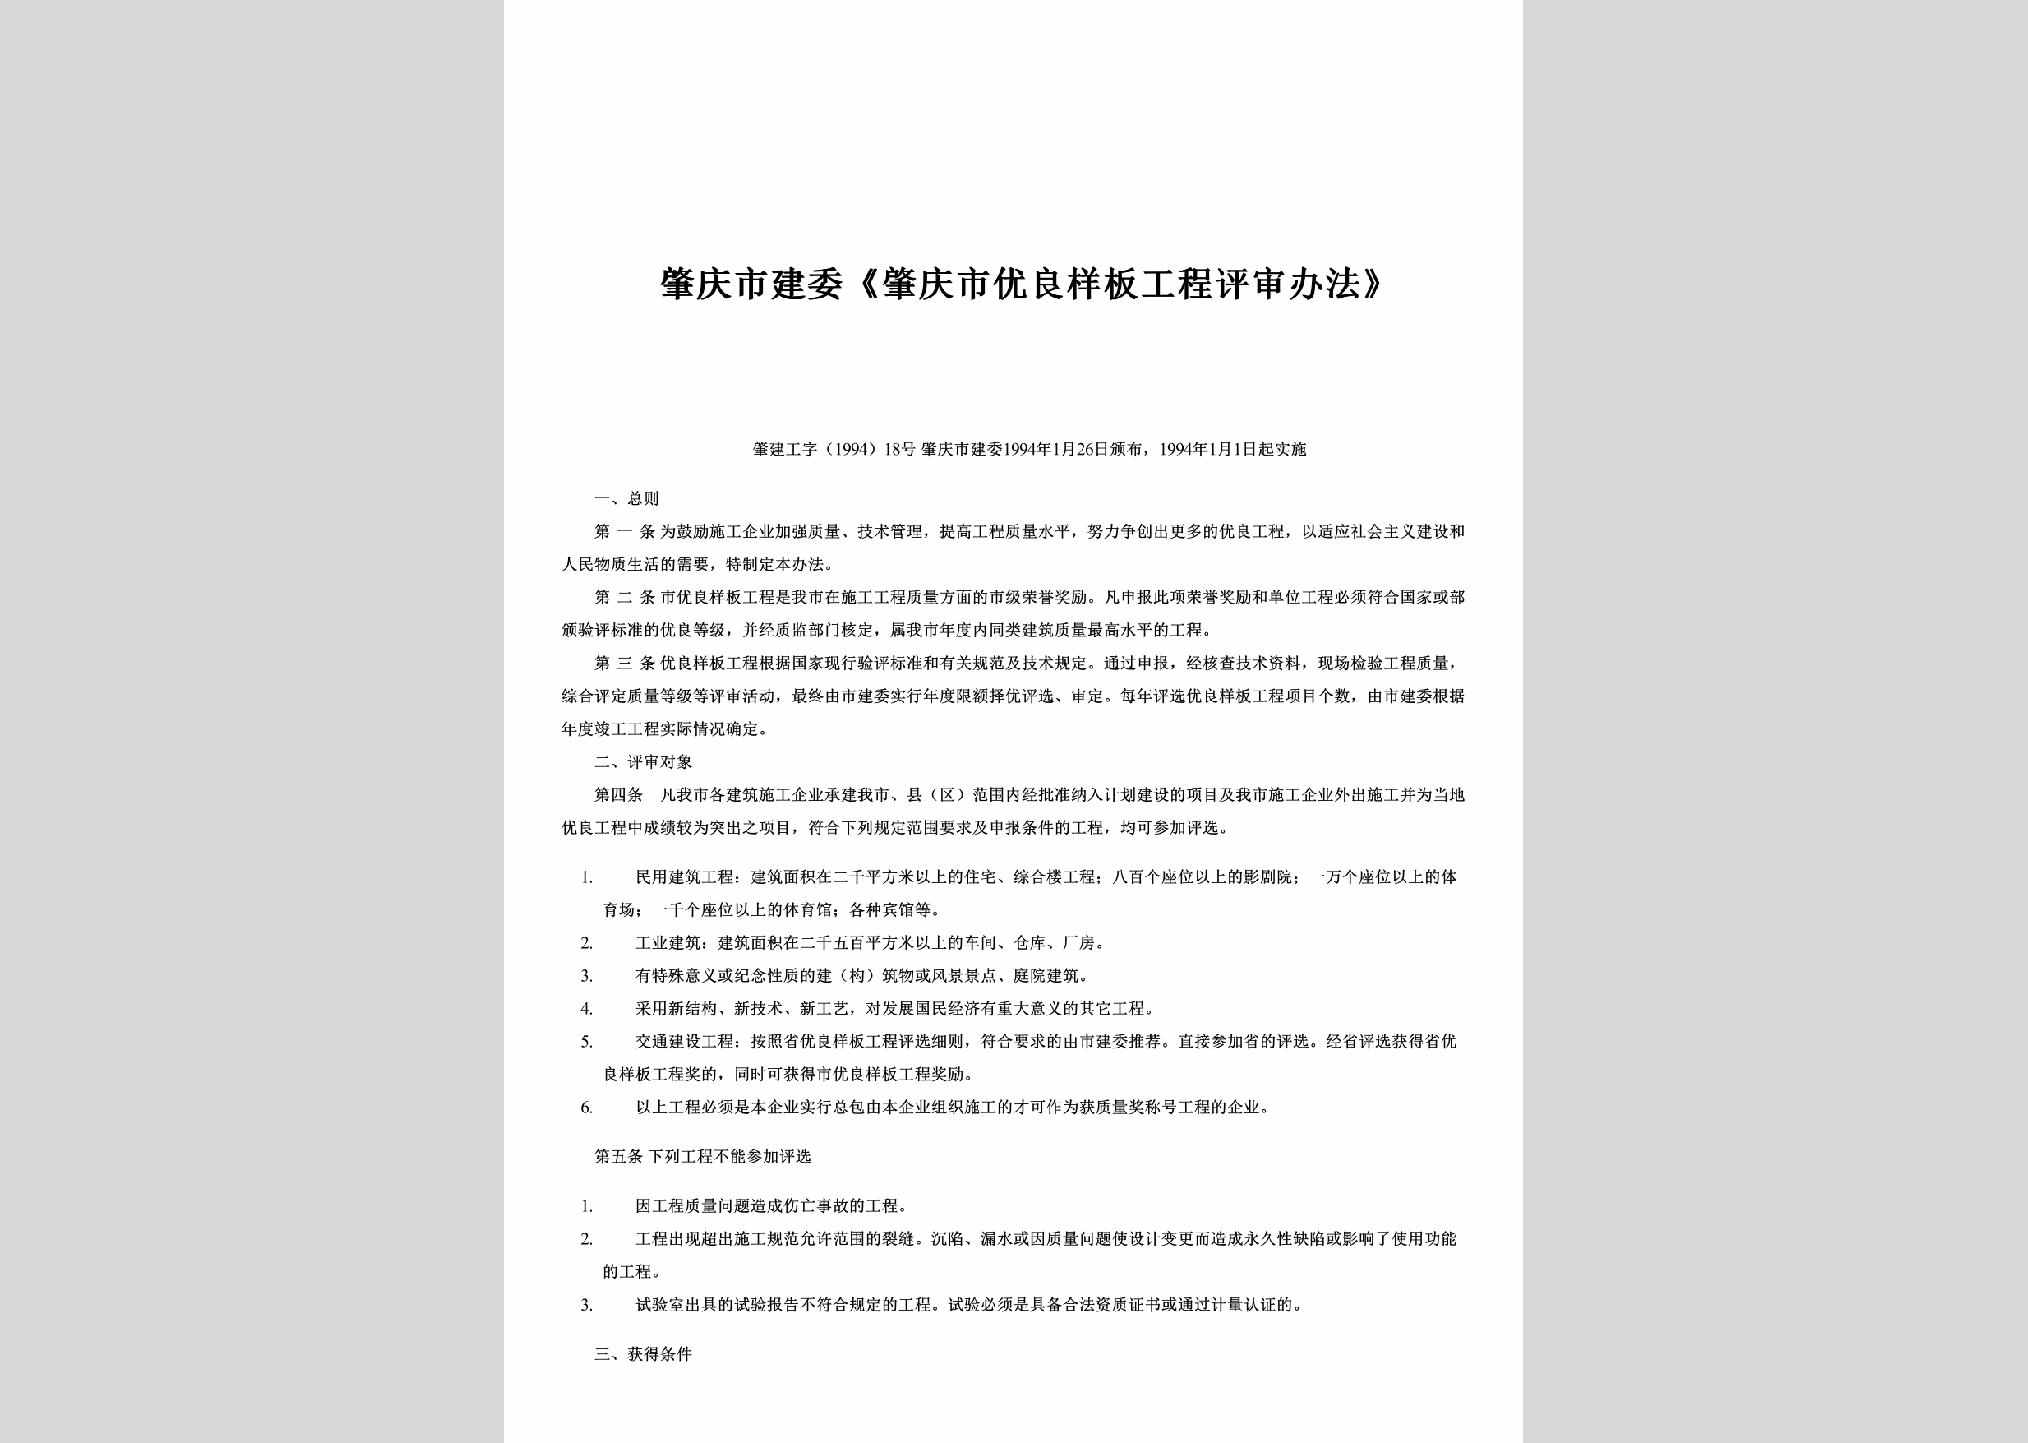 肇建工字[1994]18号：《肇庆市优良样板工程评审办法》